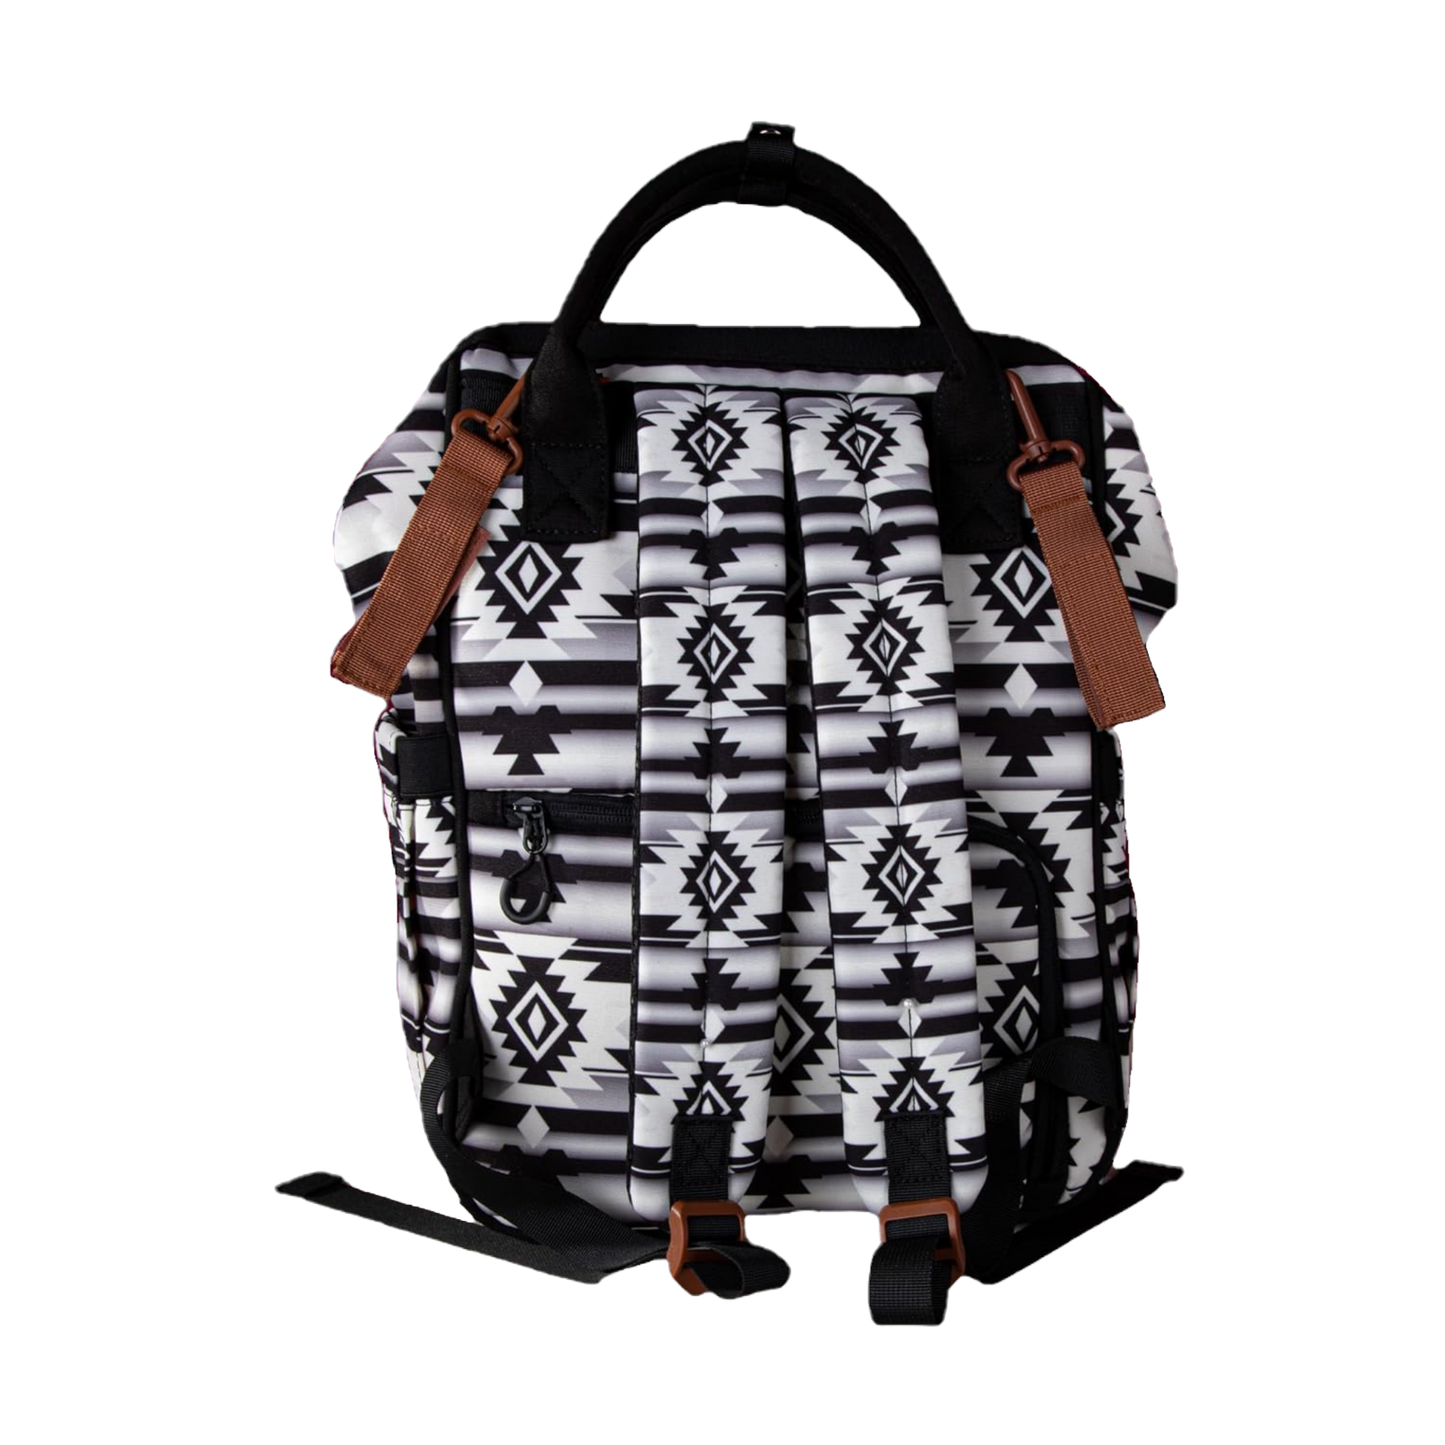 Wrangler Allover Aztec Printed Black & White Backpack WG2204-9110BK